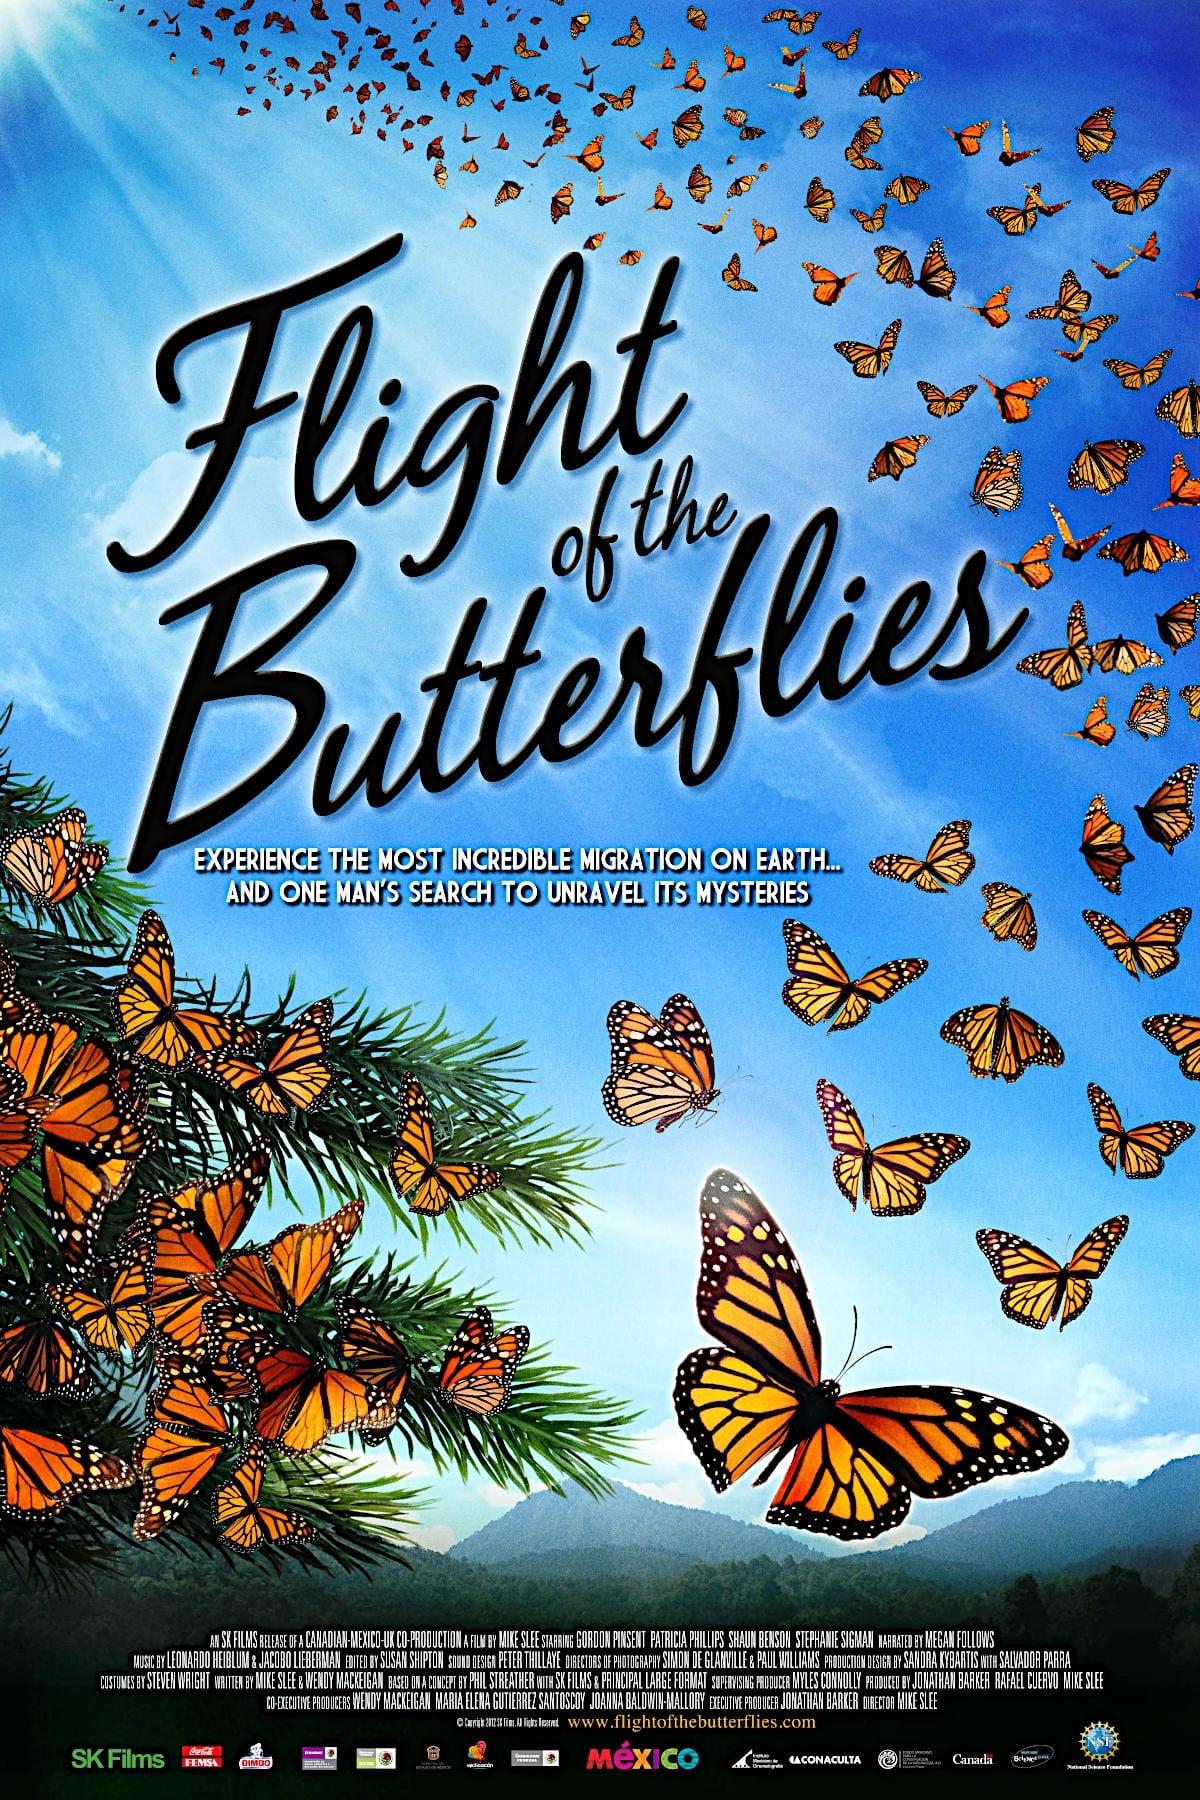 Flight of the Butterflies poster